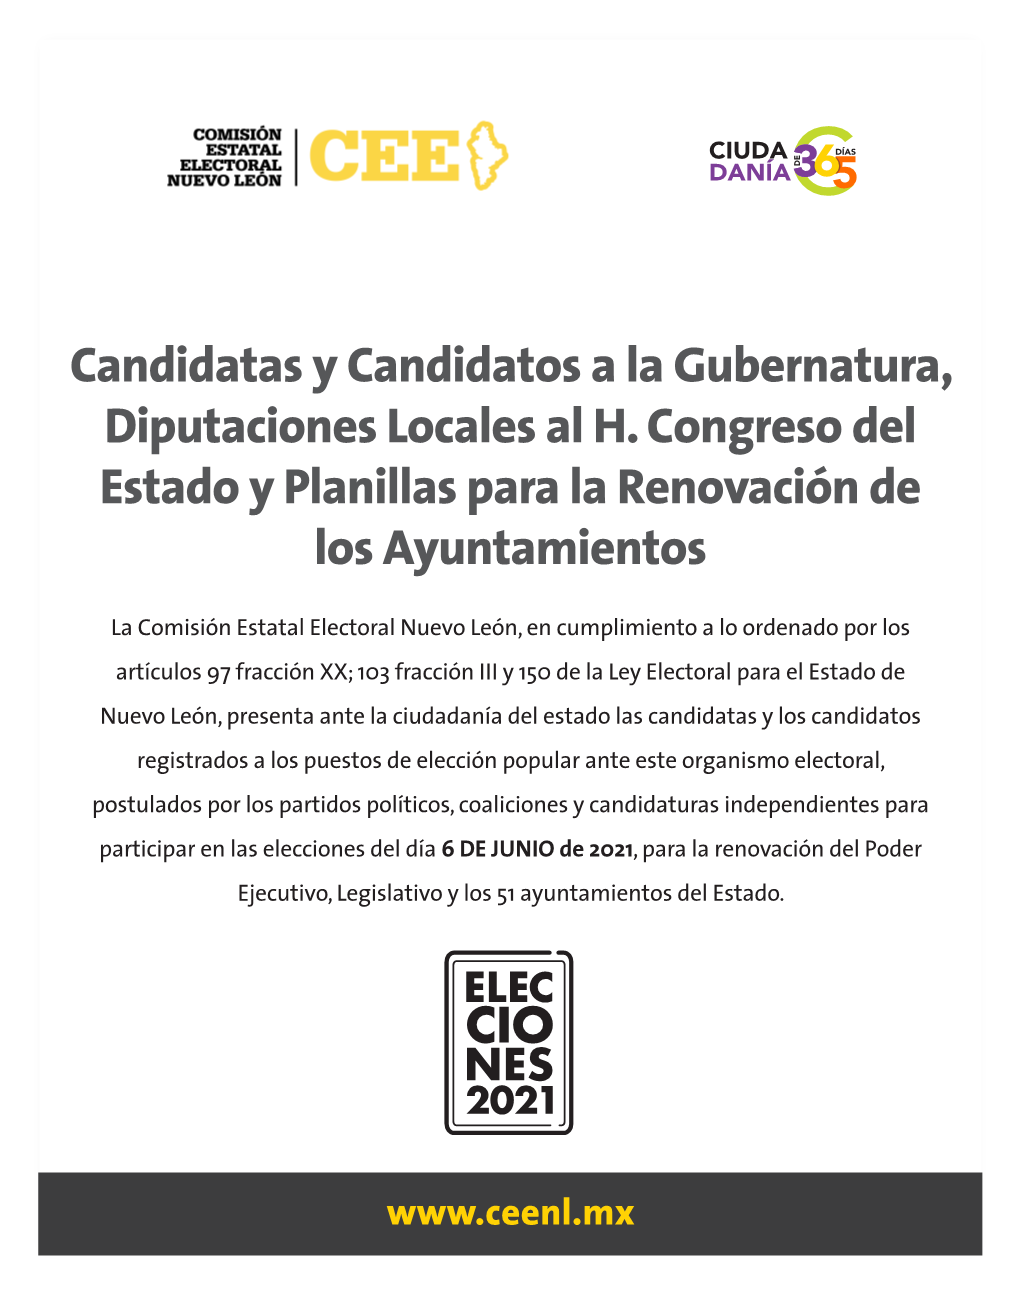 Candidatas Y Candidatos a La Gubernatura, Diputaciones Locales Al H